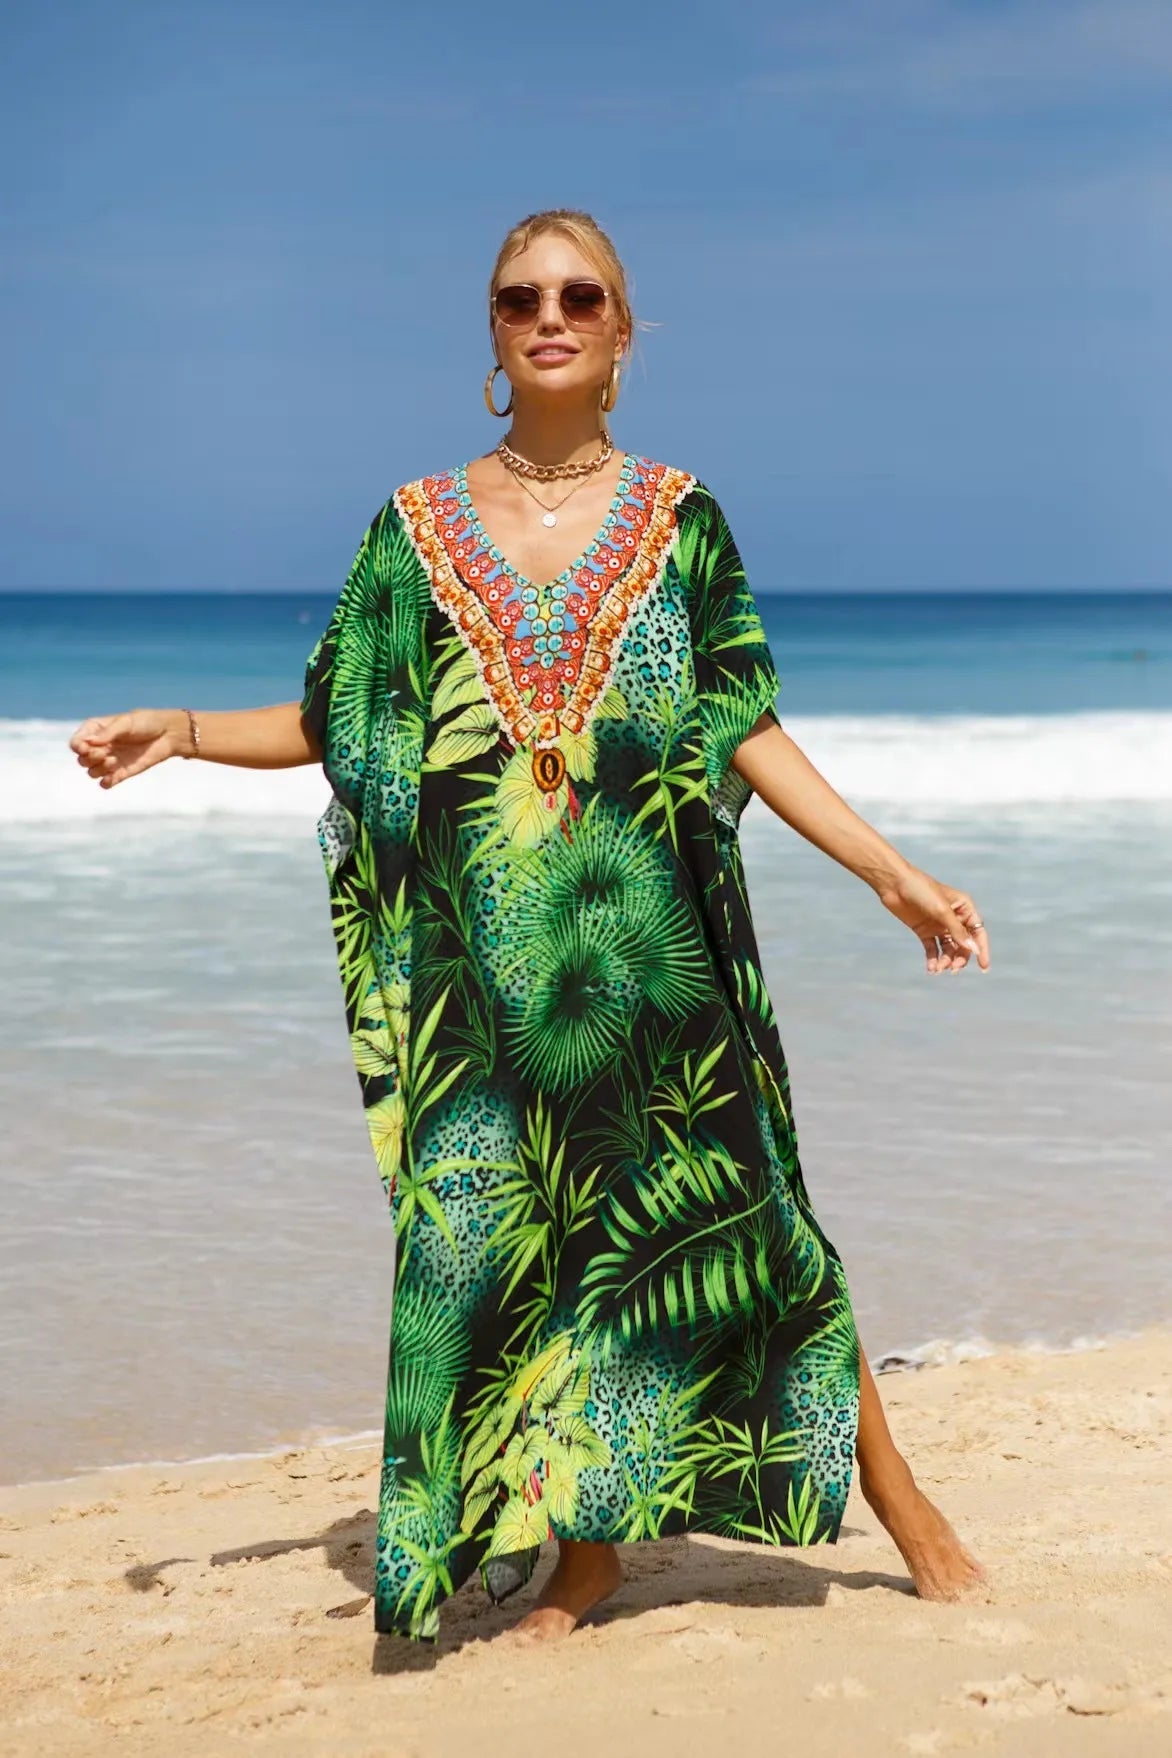 Maxi Robe Kaftans for Swimwear Bliss model 13 Beachwear Australia